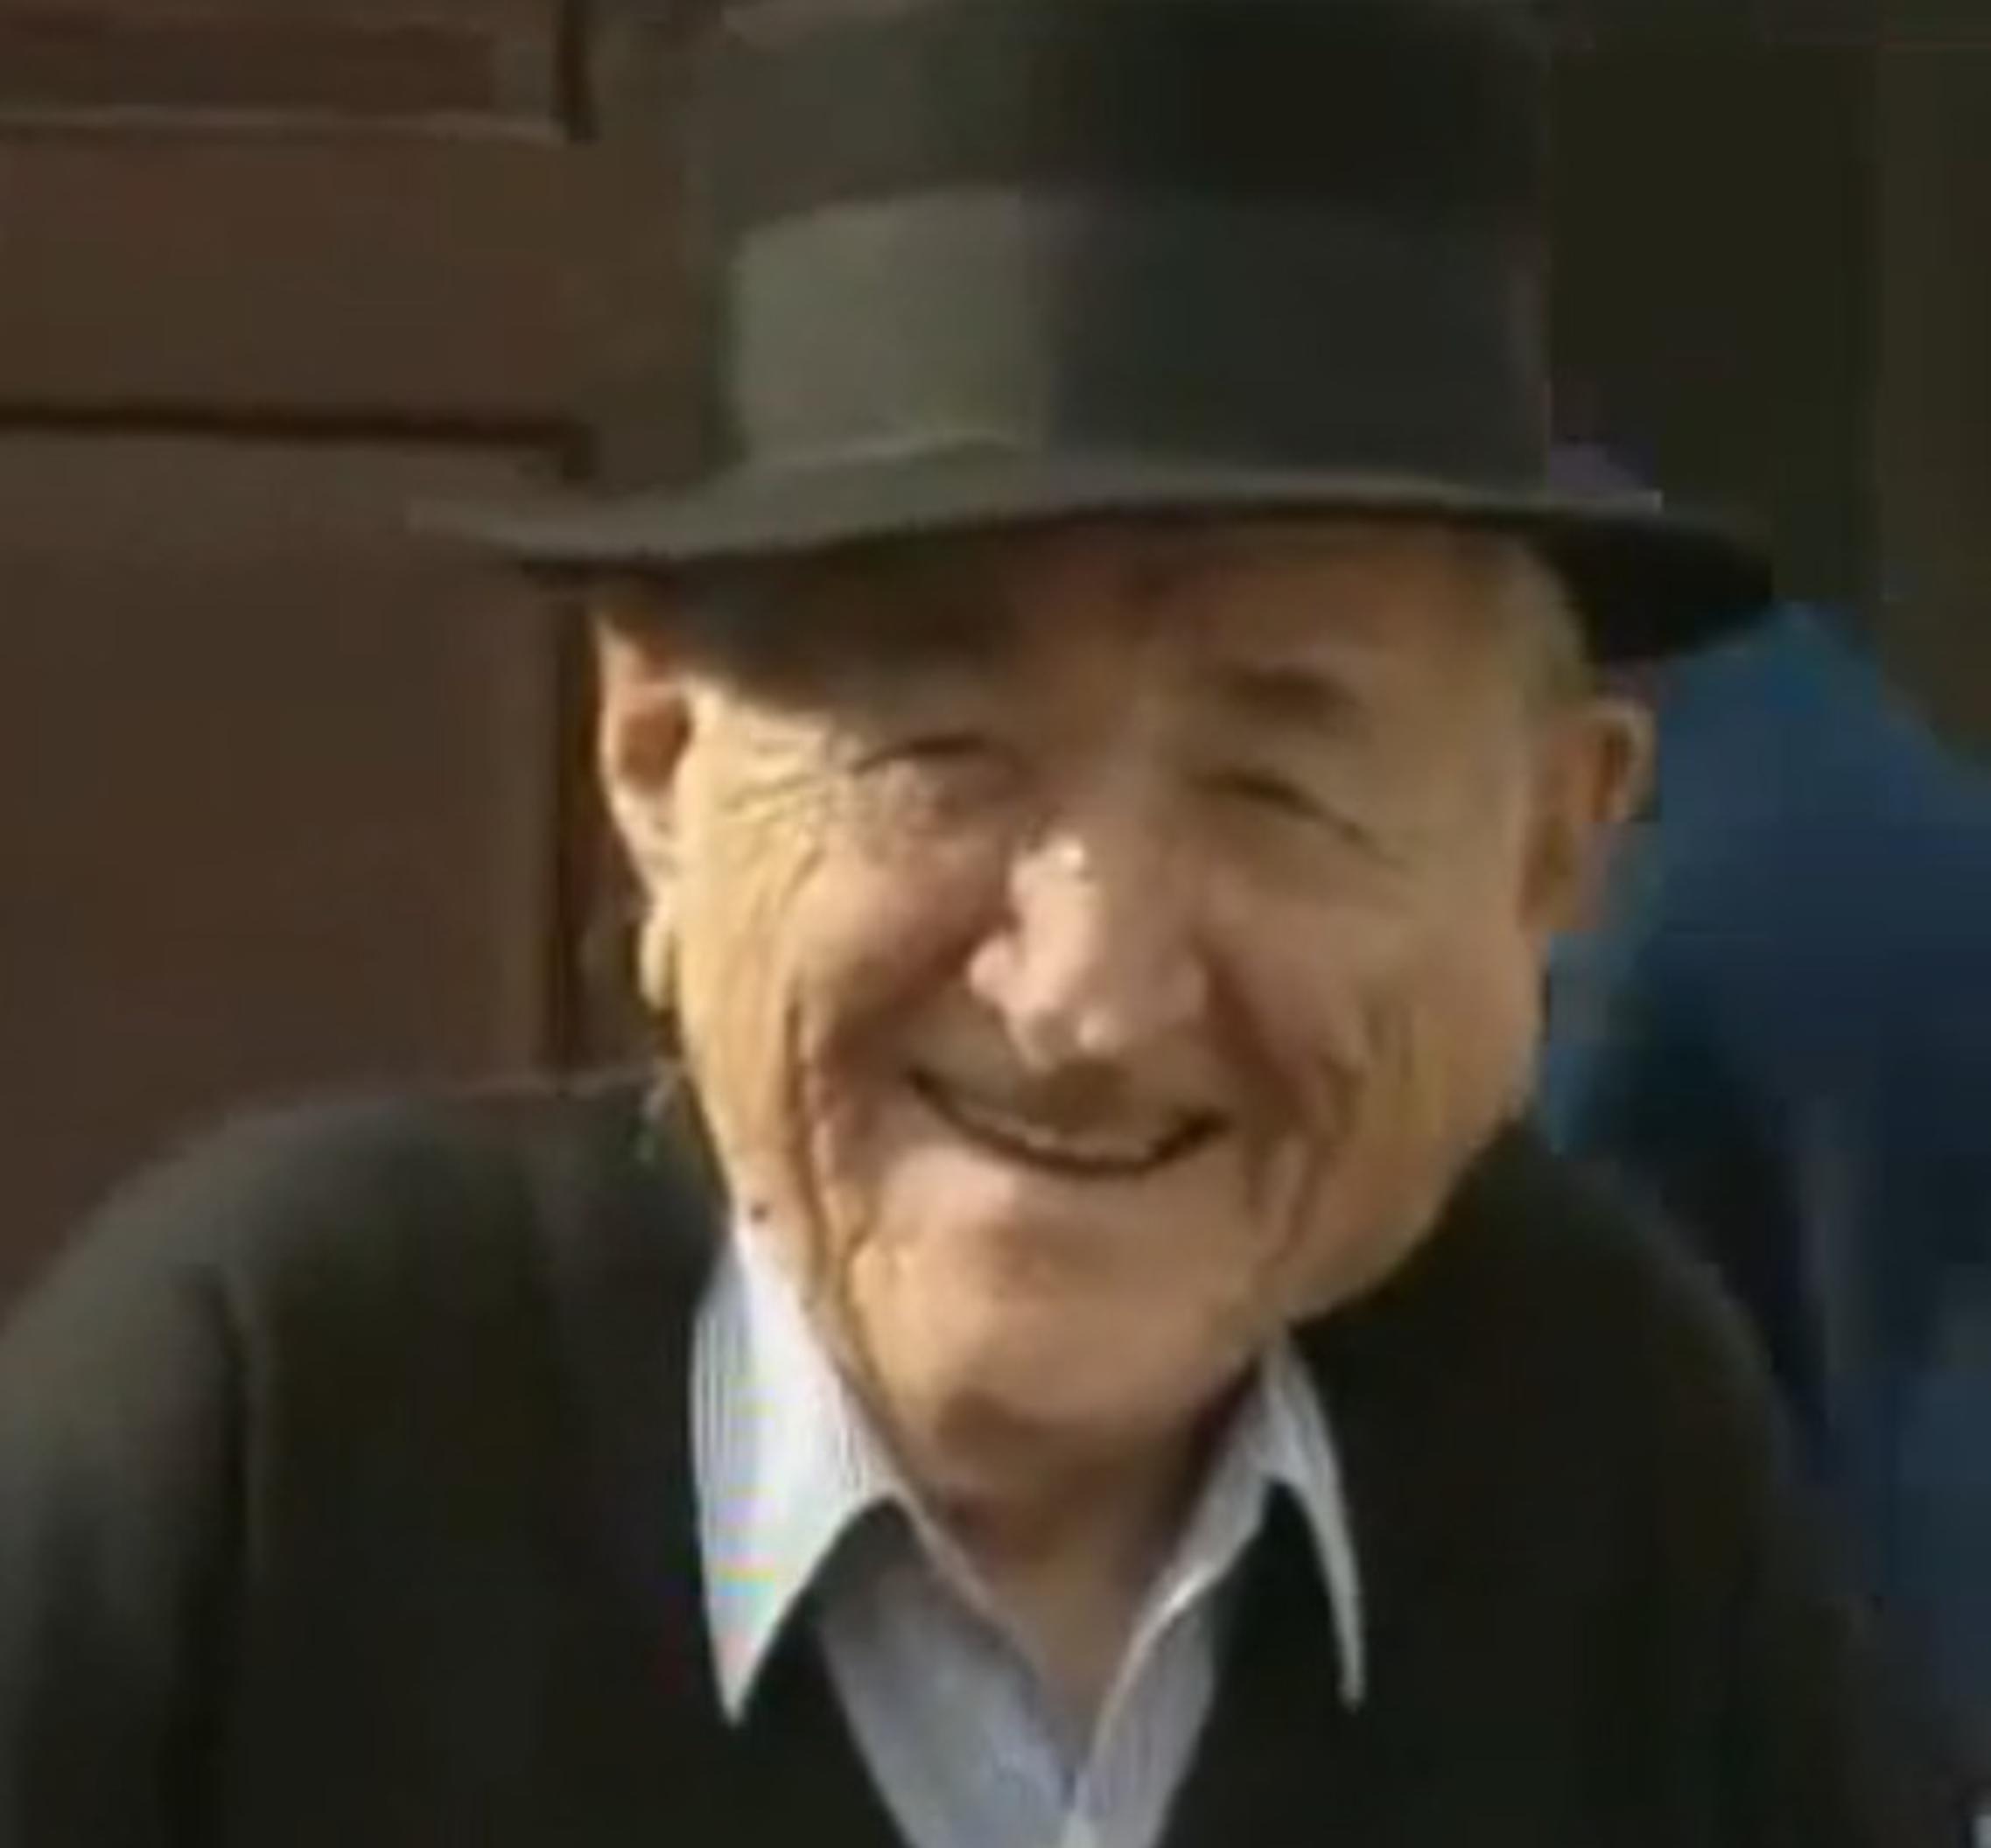 Šima Seletković-Matančev (1917.-2013.)